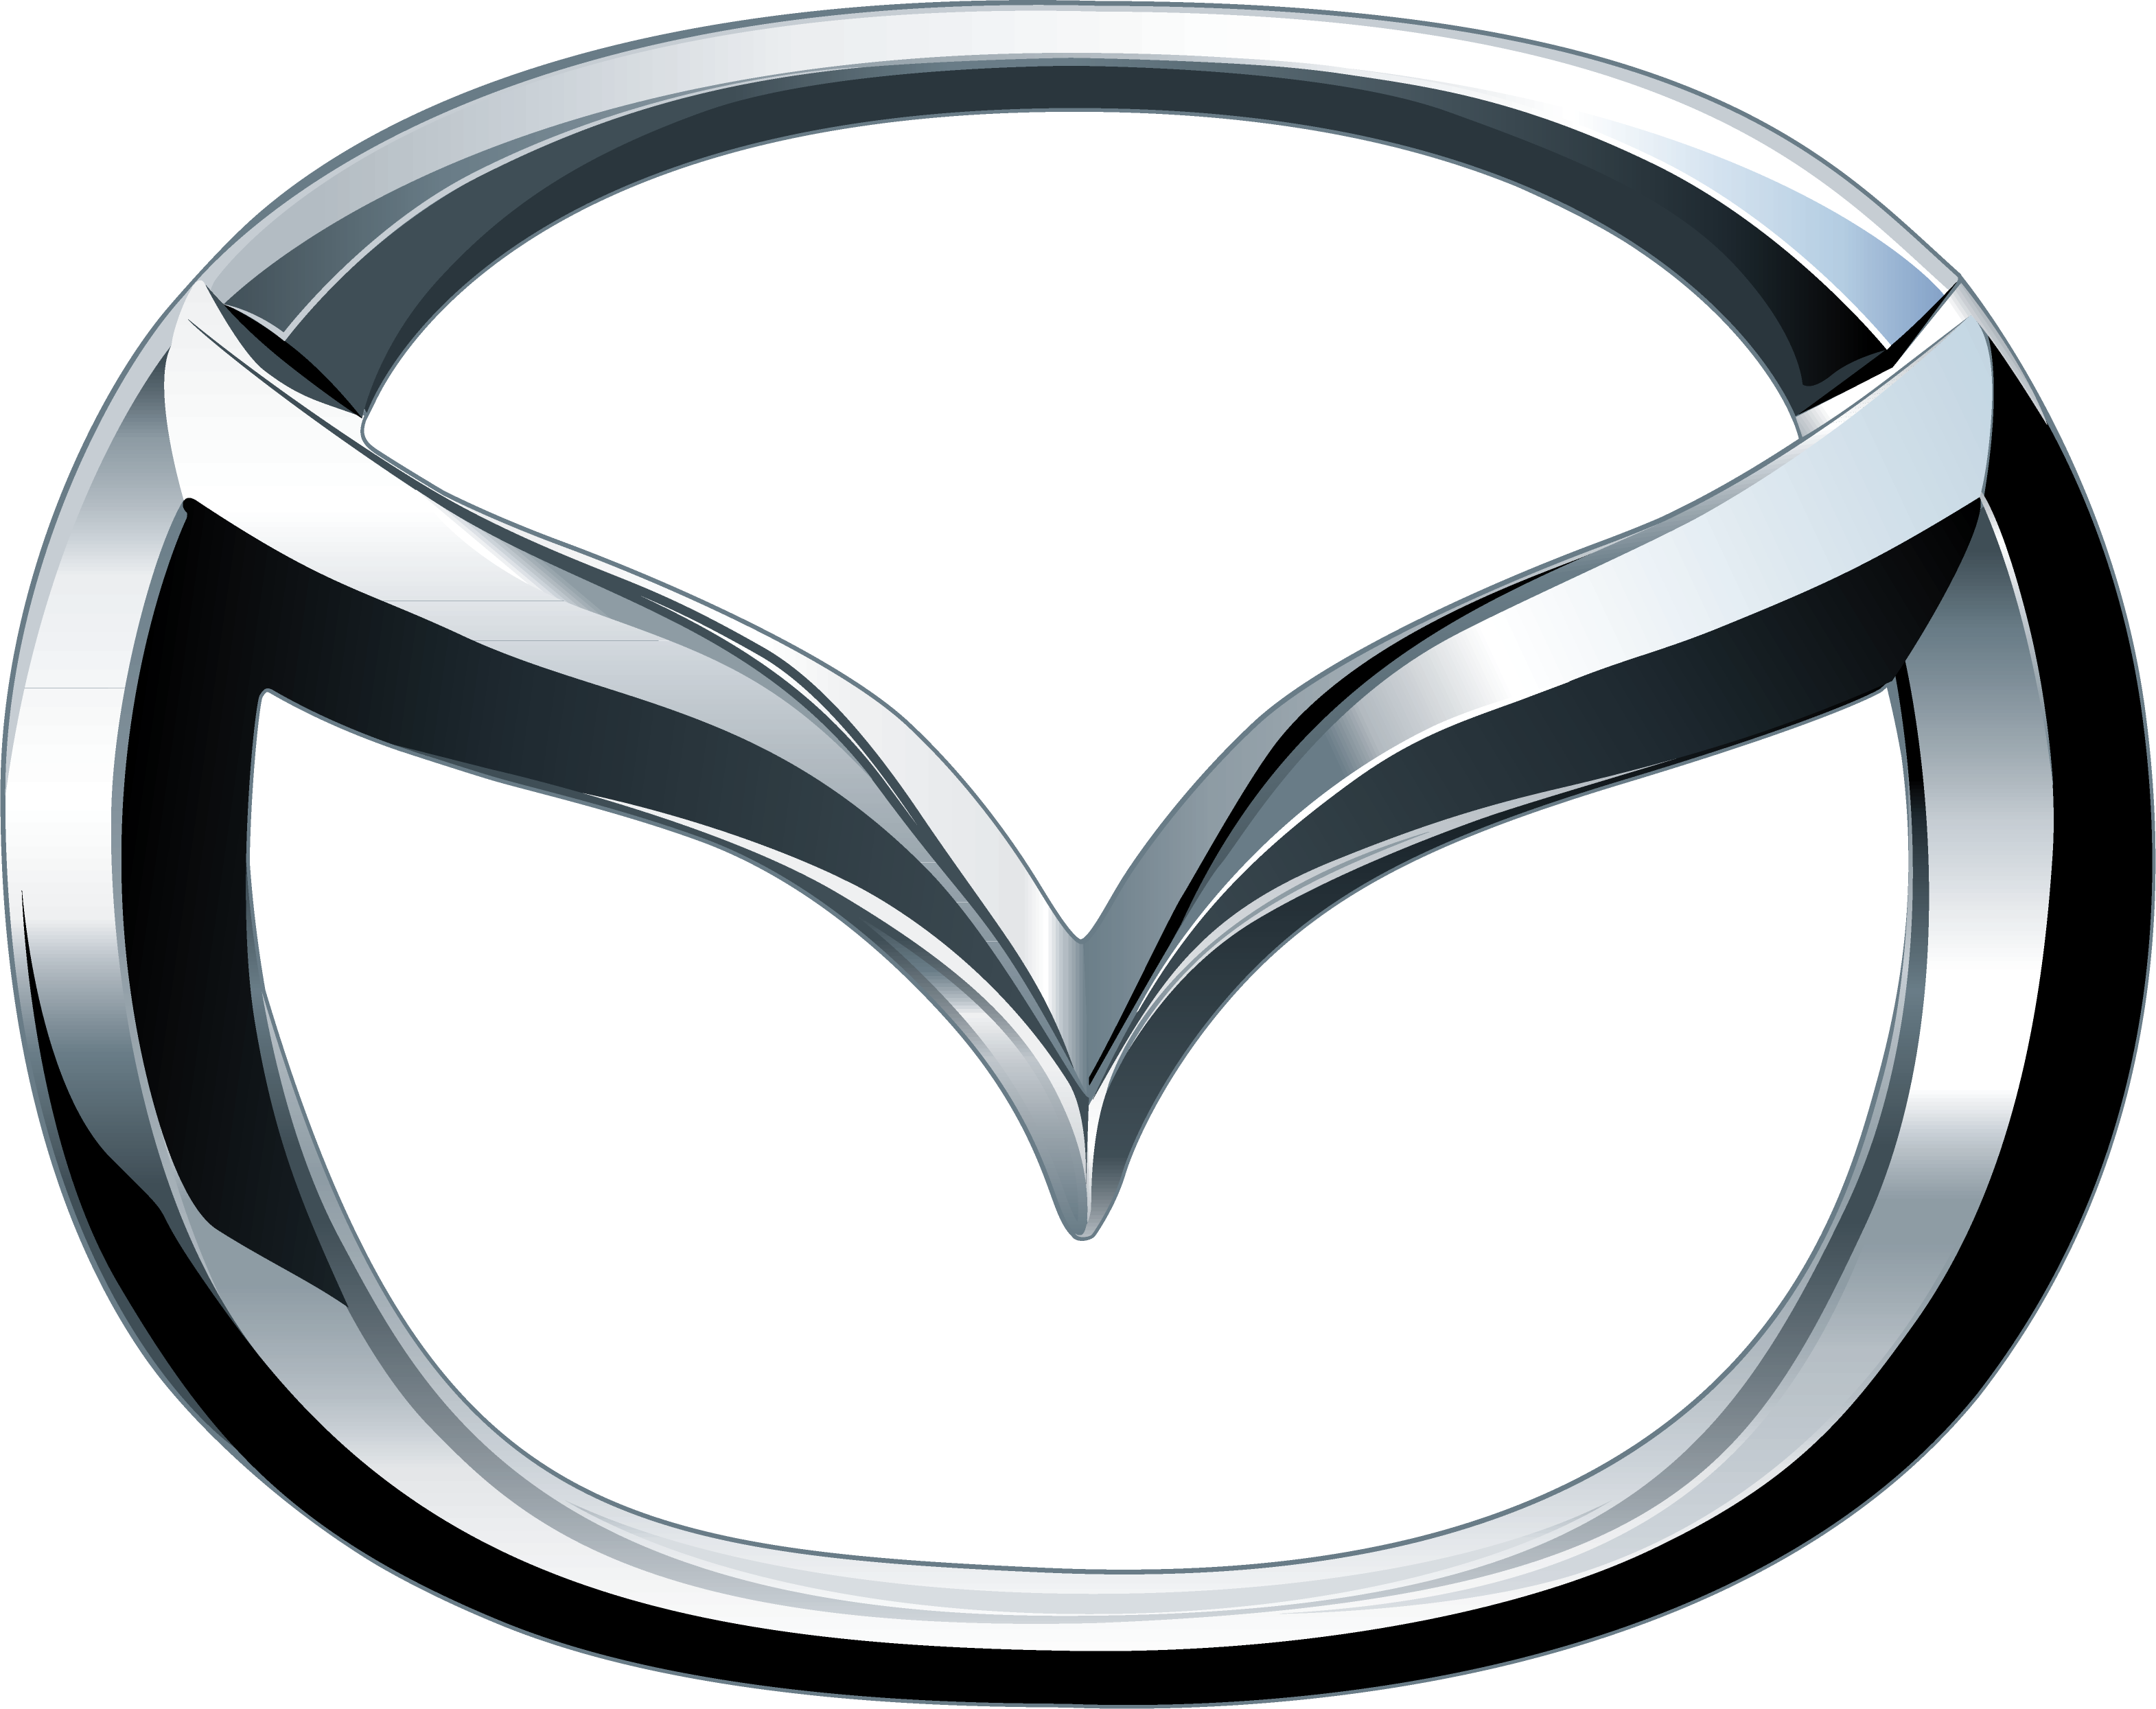 Mazda car logo PNG brand image